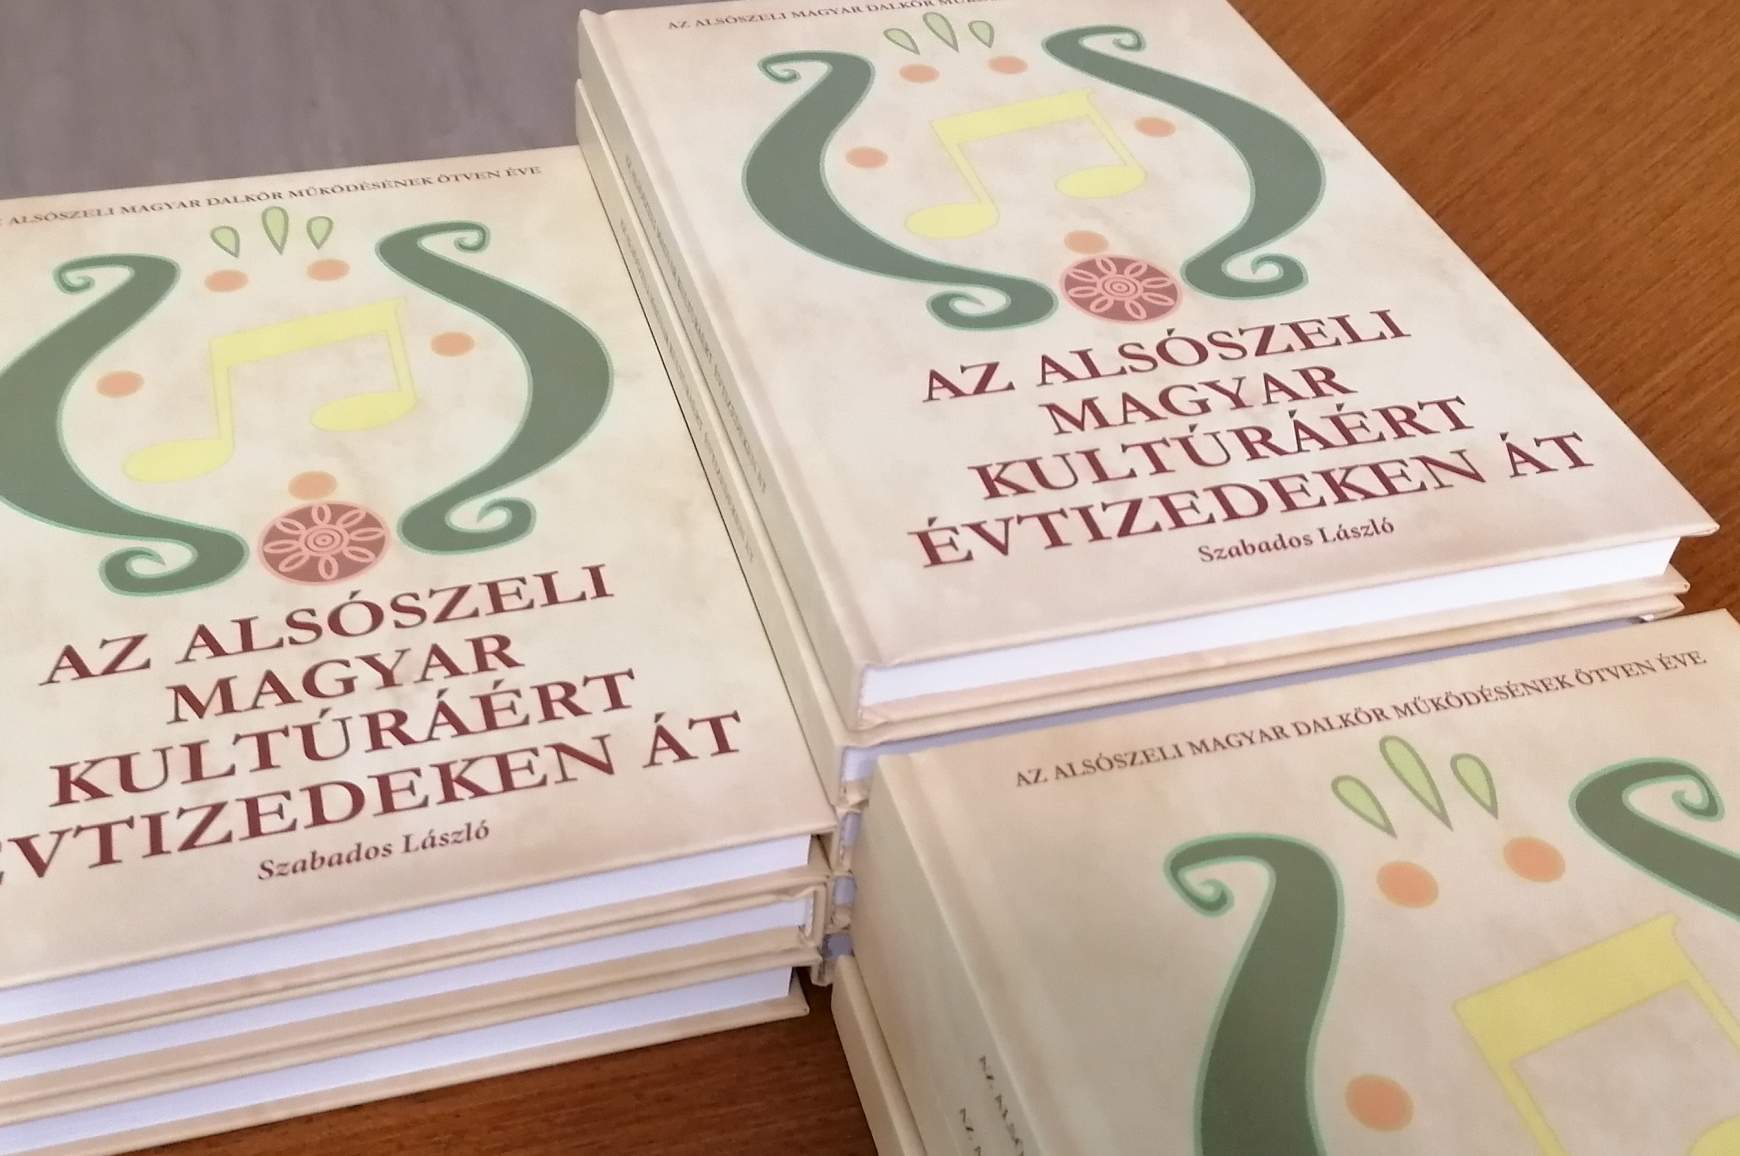 Az alsószeli magyar kultúráért évtizedeken át